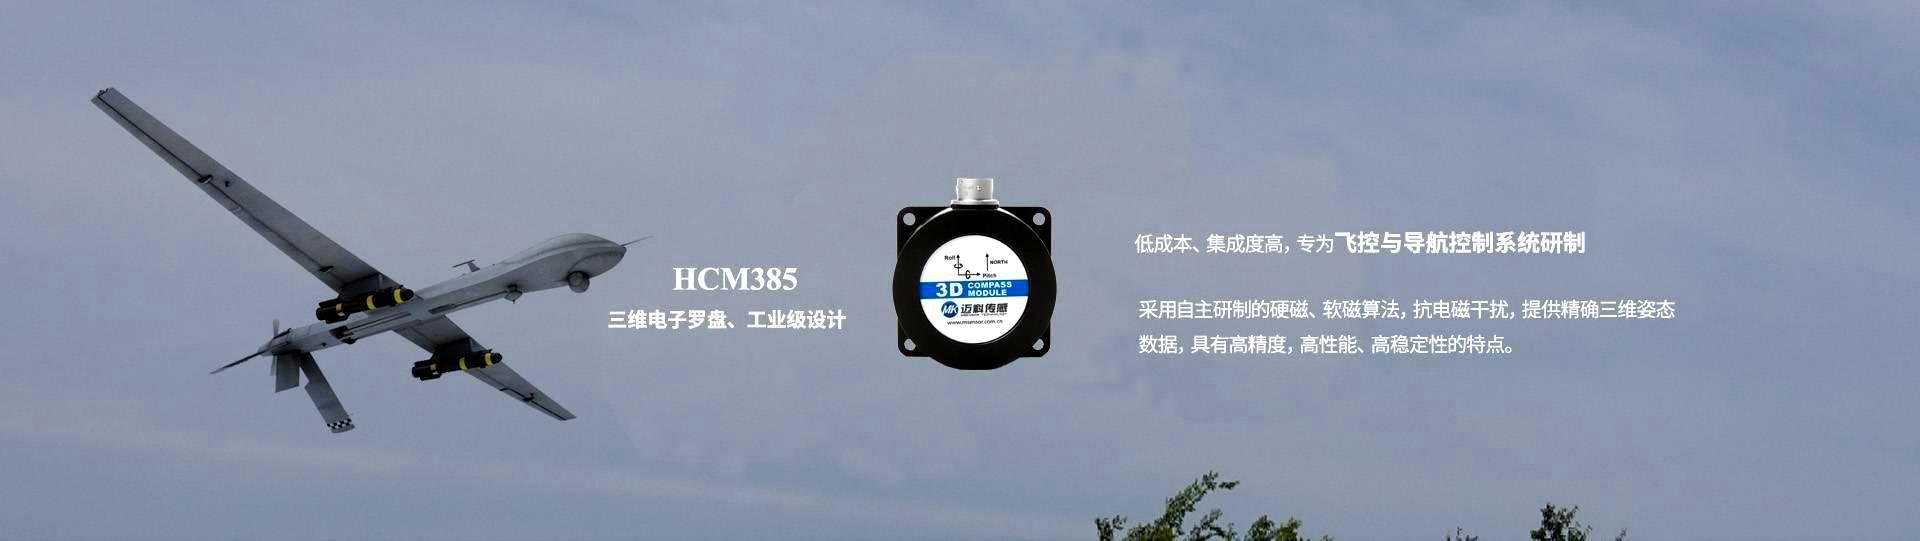 HCM385三维电子罗盘飞控与导航控制